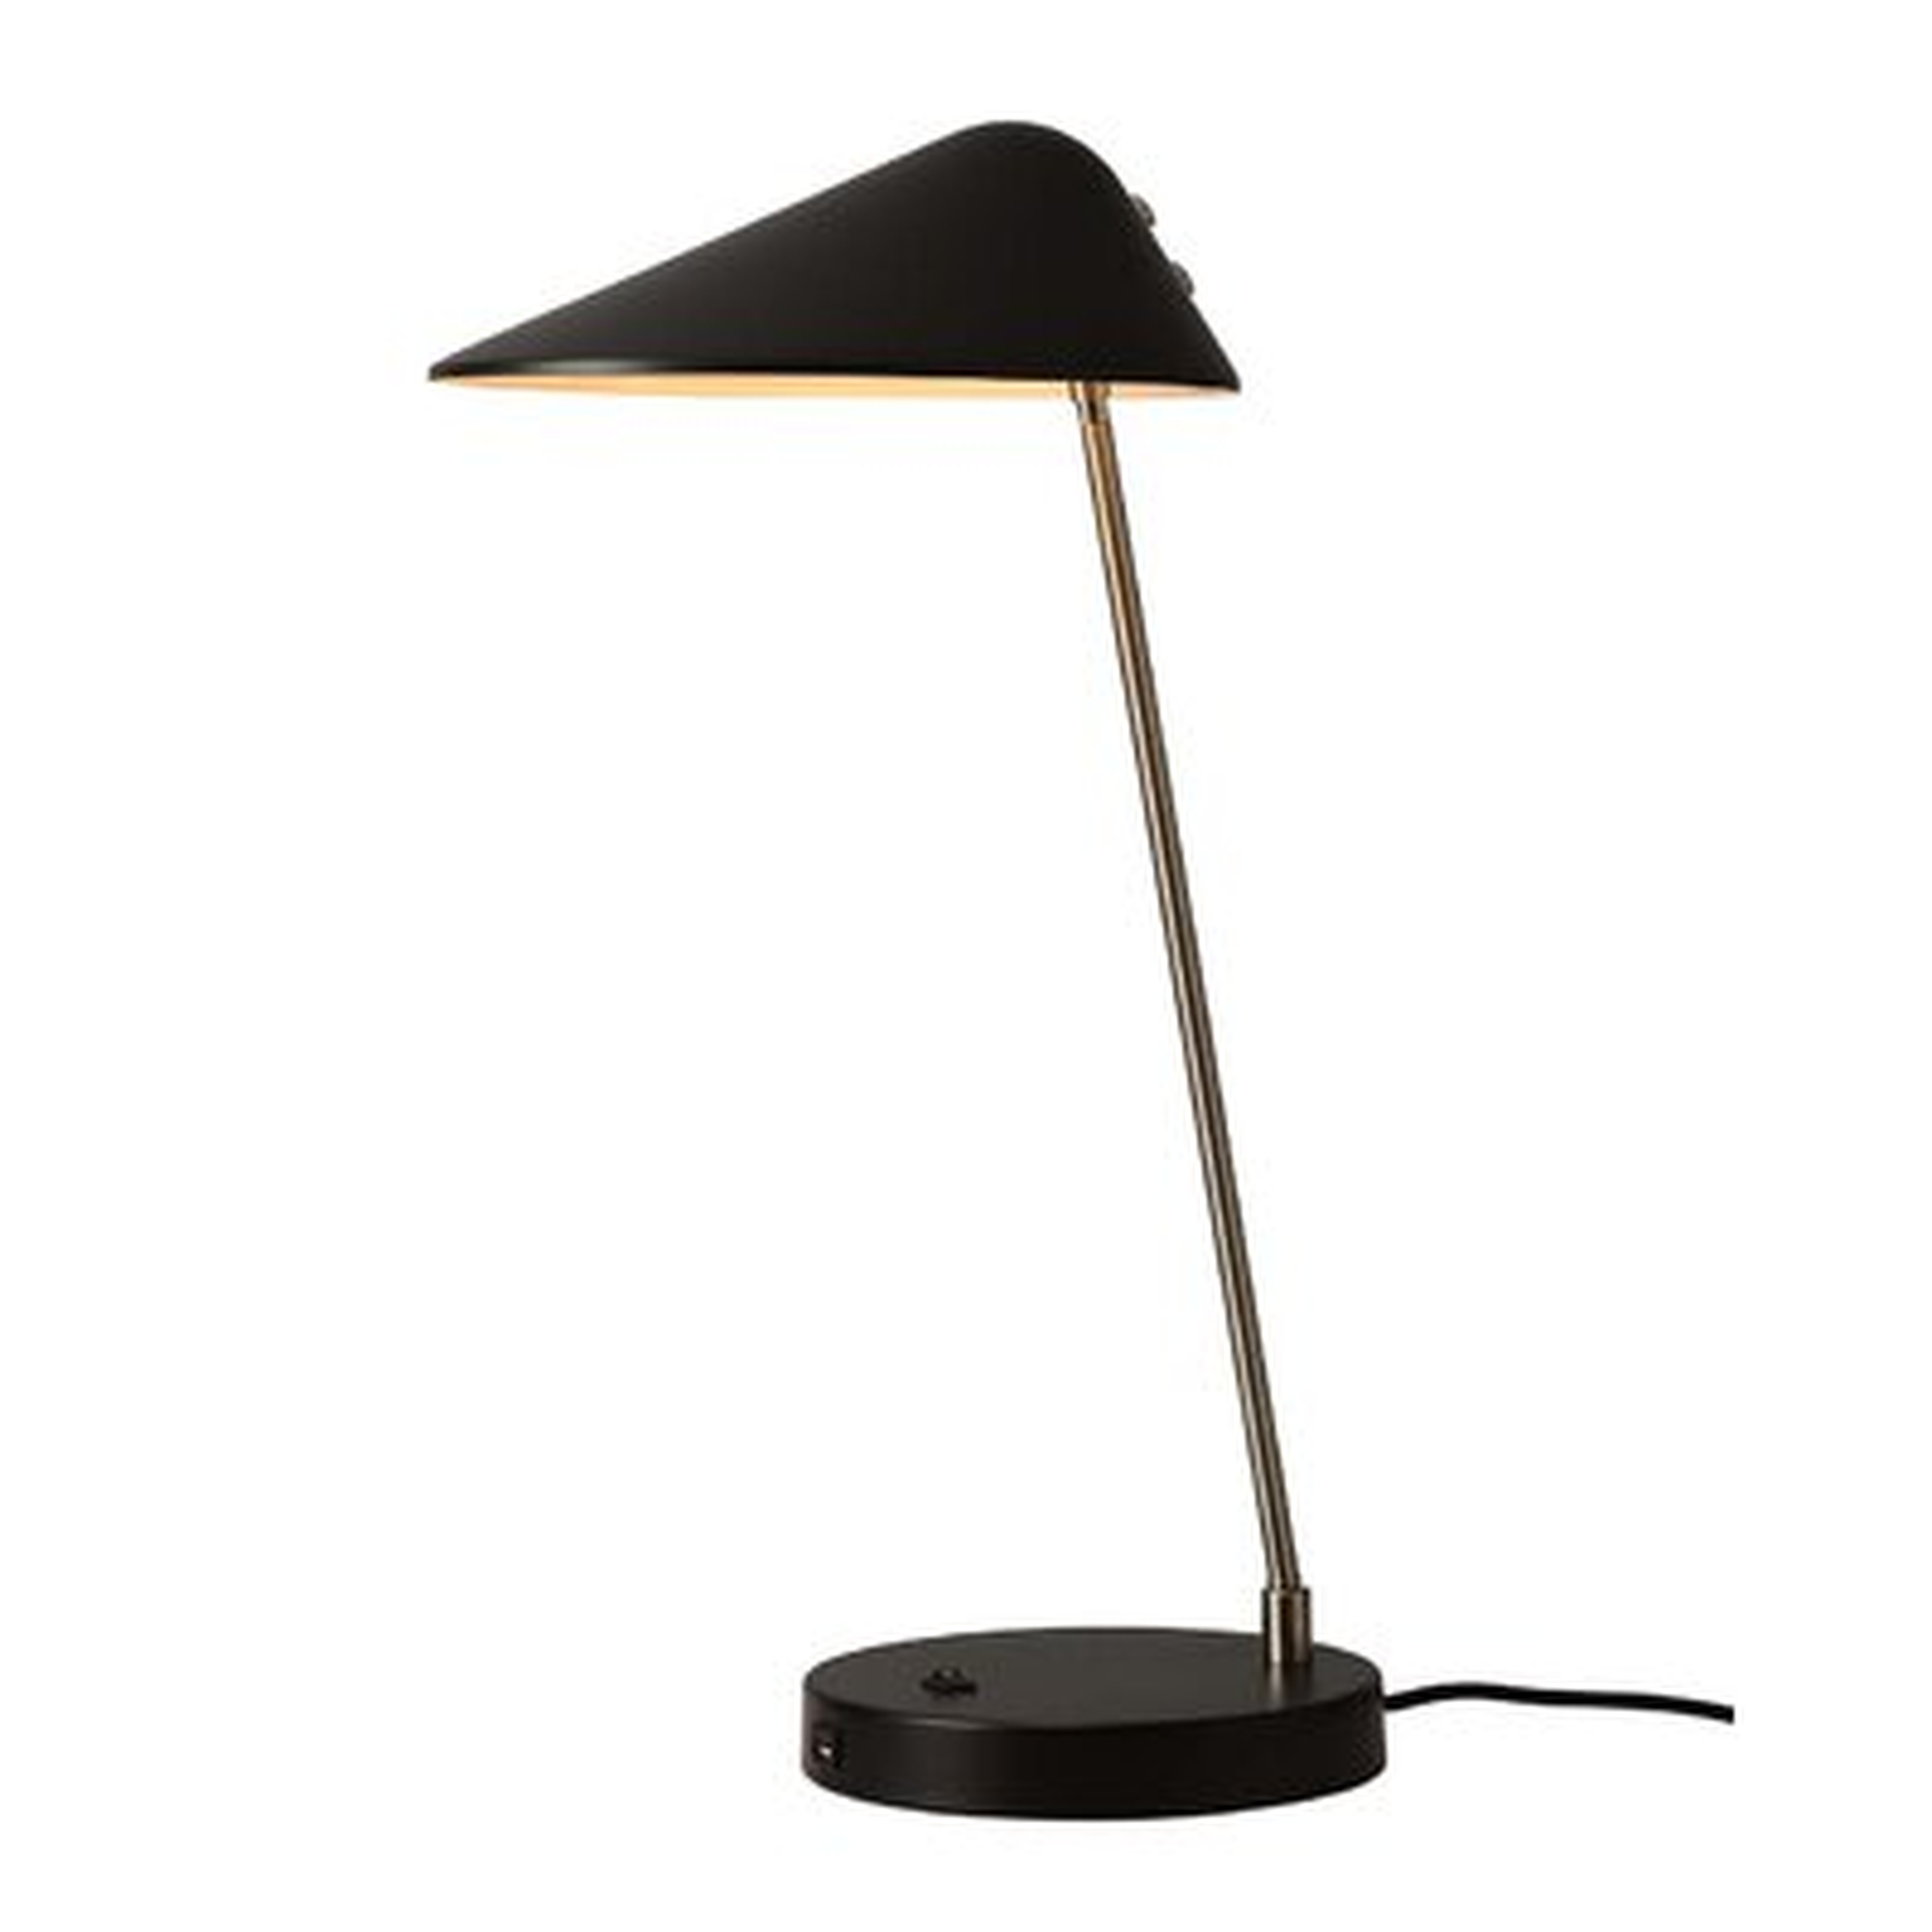 Abner 25" Black Desk Lamp with USB and Outlet Set - AllModern